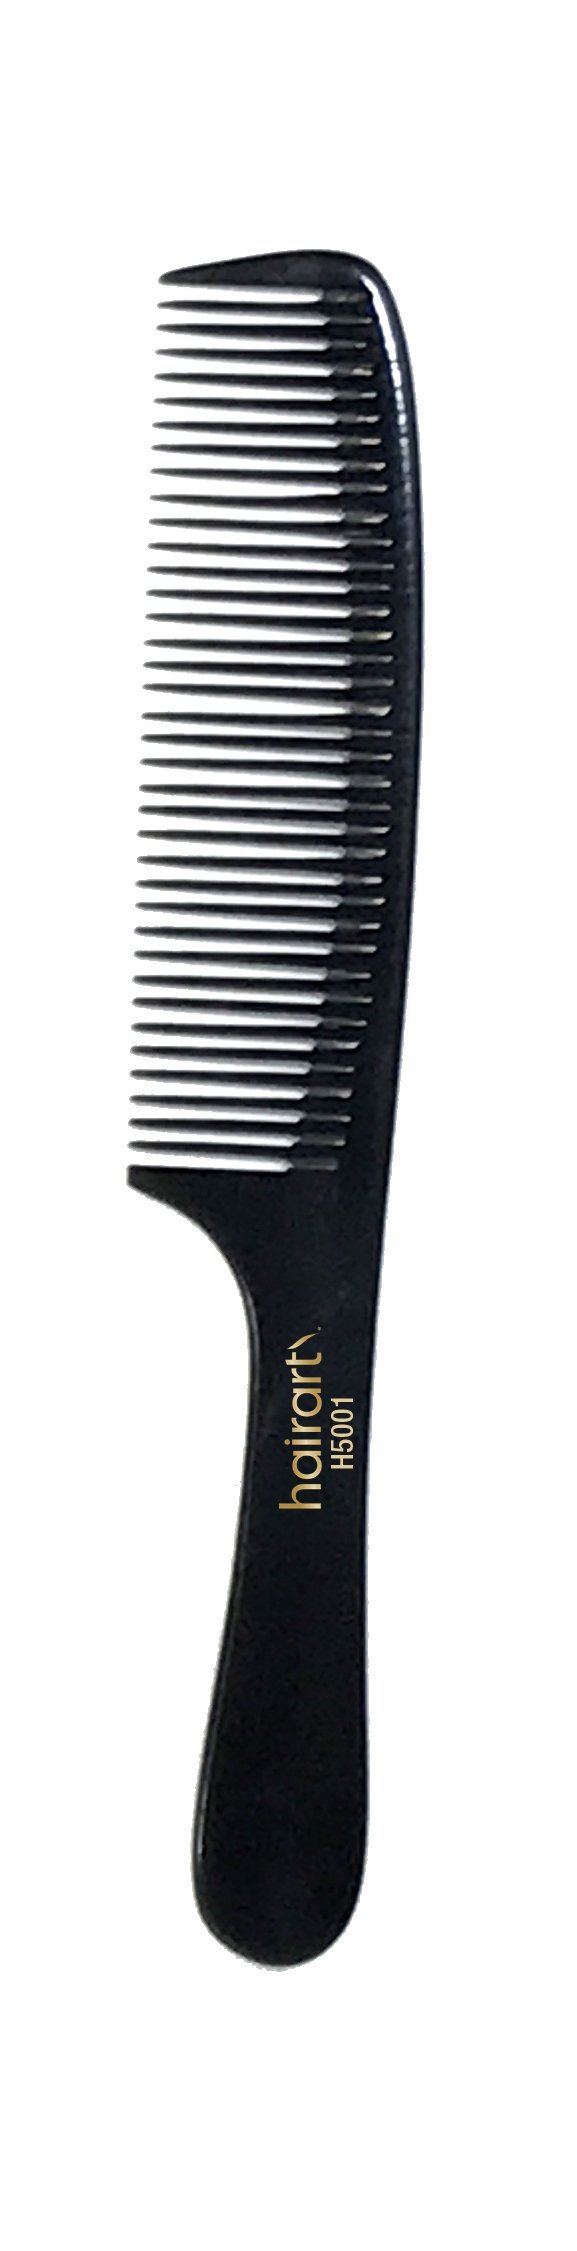 Barber Comb Small 8 HairArt Int'l Inc.